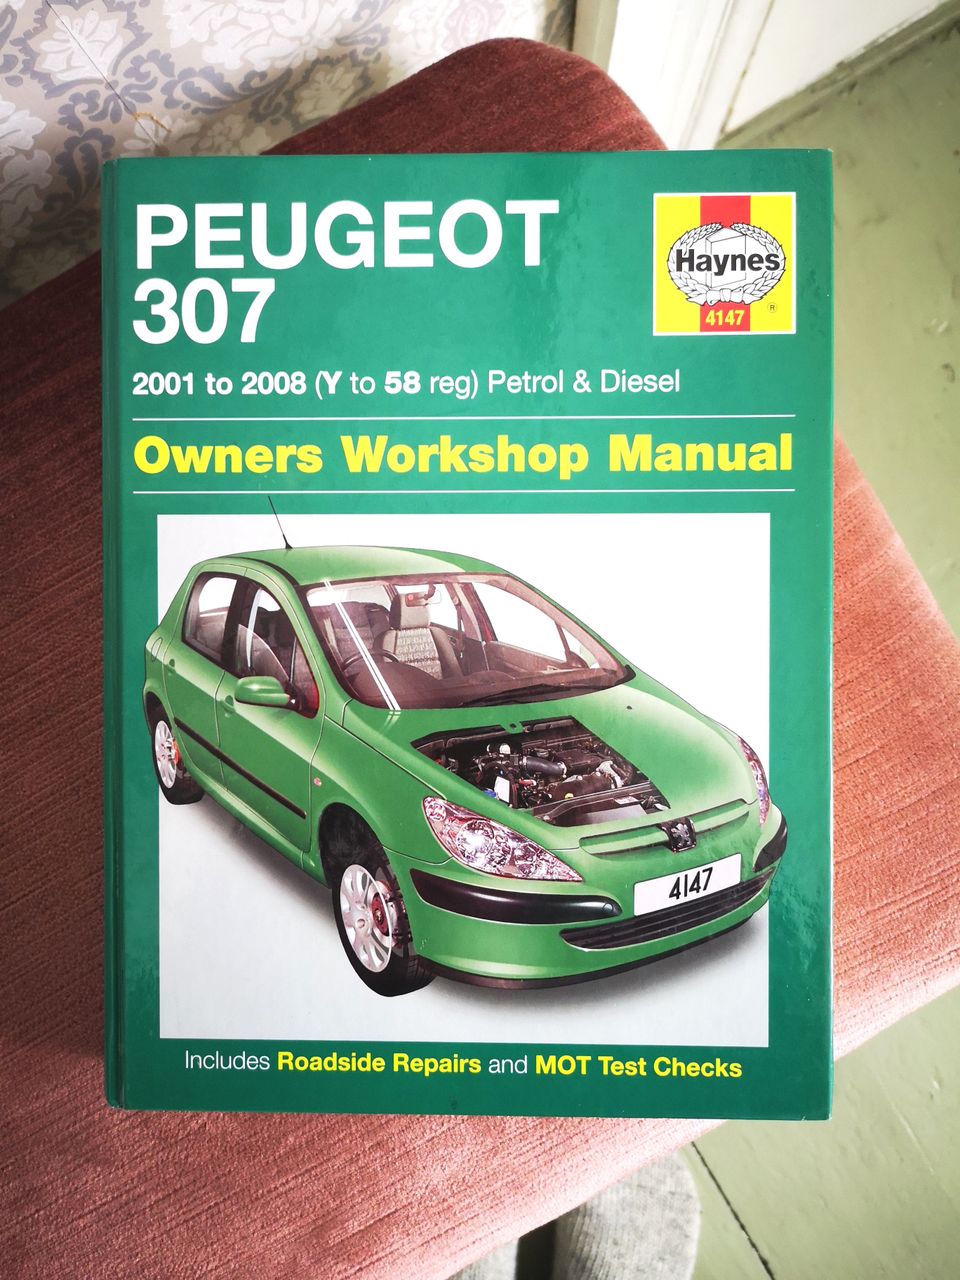 Peugeot 307 korjauskirja